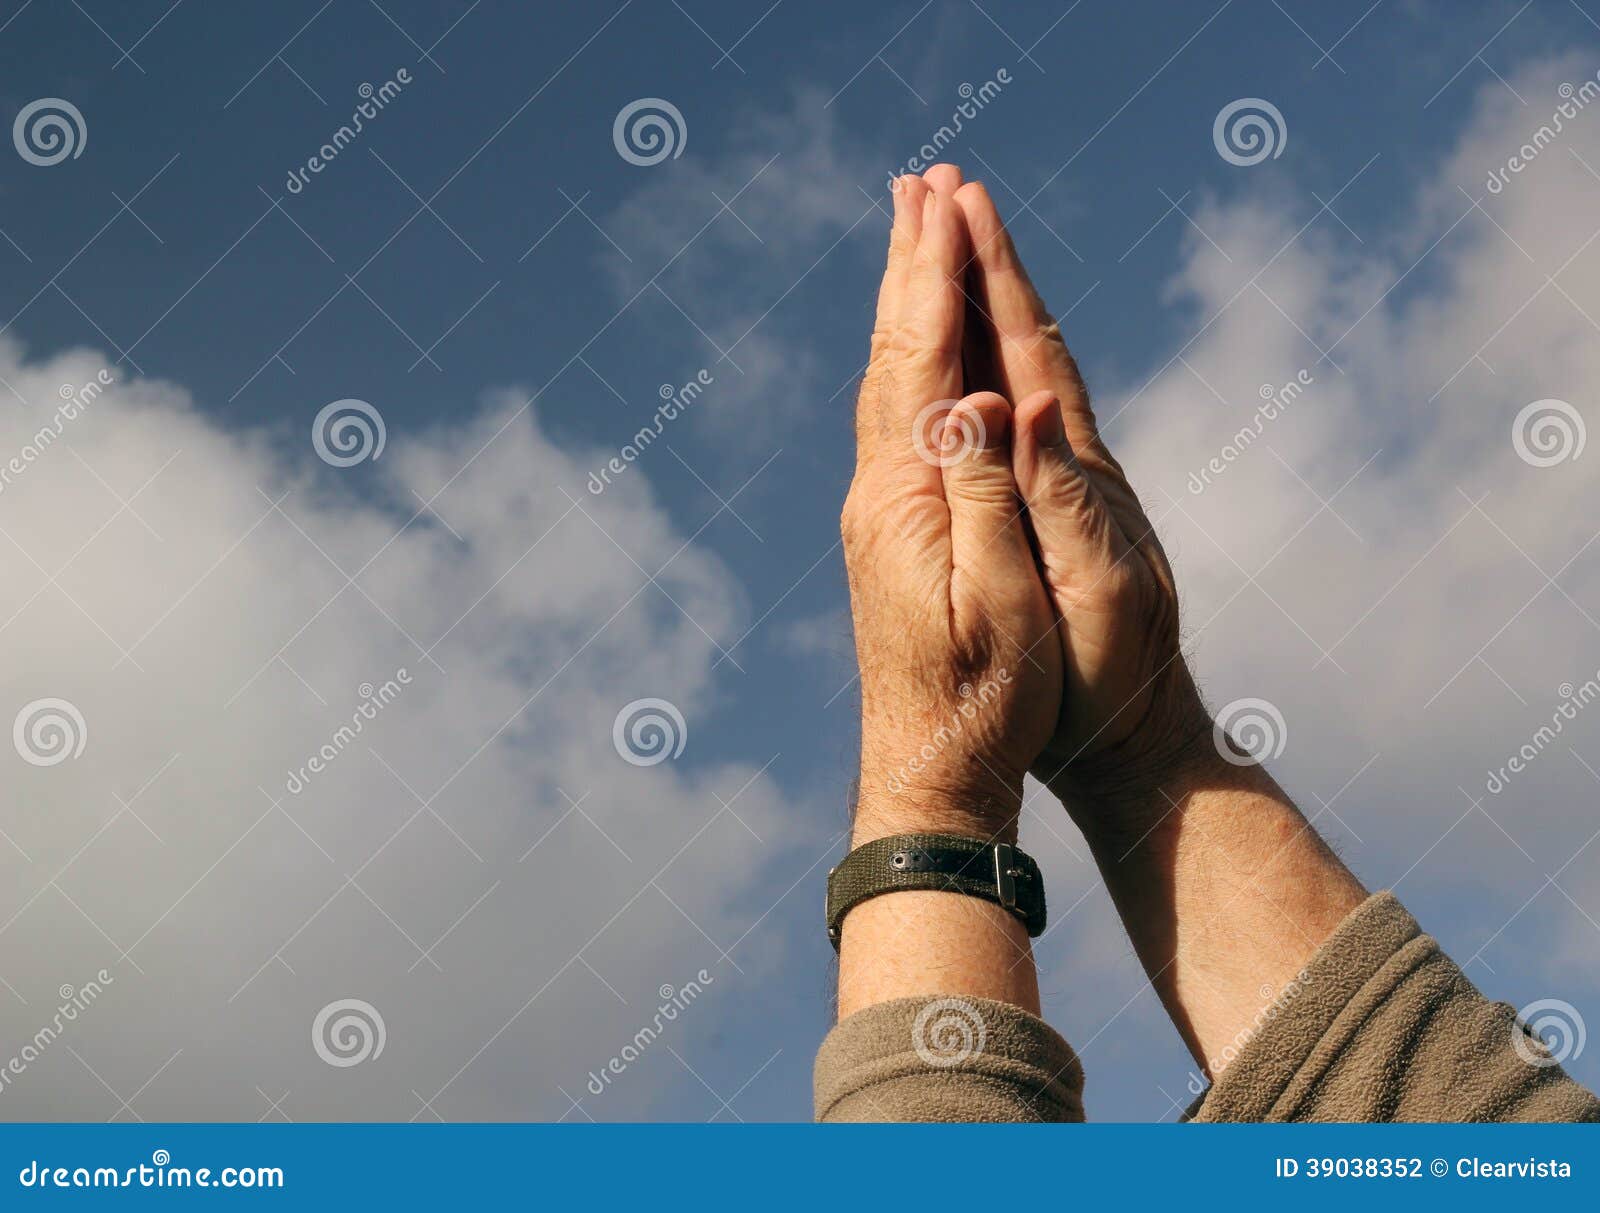 雙手對著天空 手指 雙手向天空 照片背景圖桌布圖片免費下載 - Pngtree